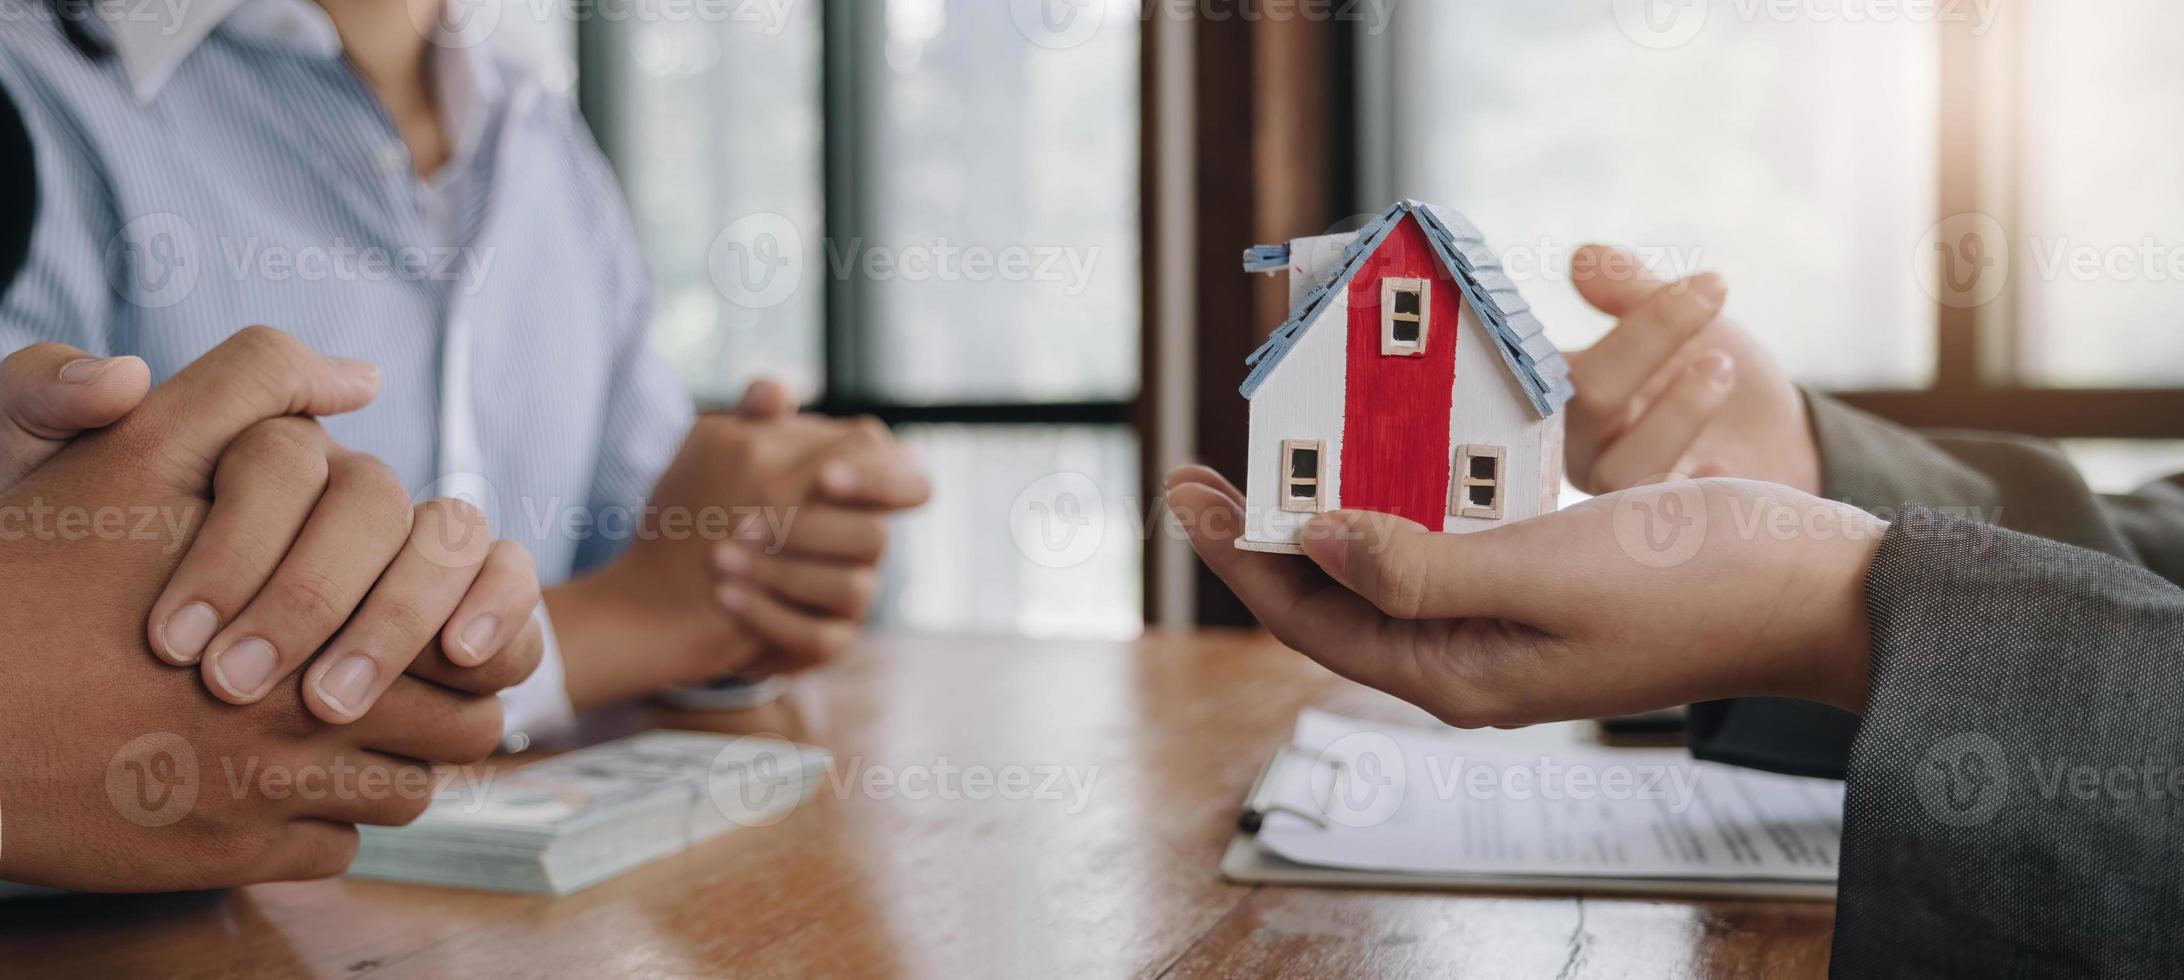 o agente imobiliário redige um contrato de moradia após o cliente ter pago a caução. discussão, negociação, feche o negócio foto